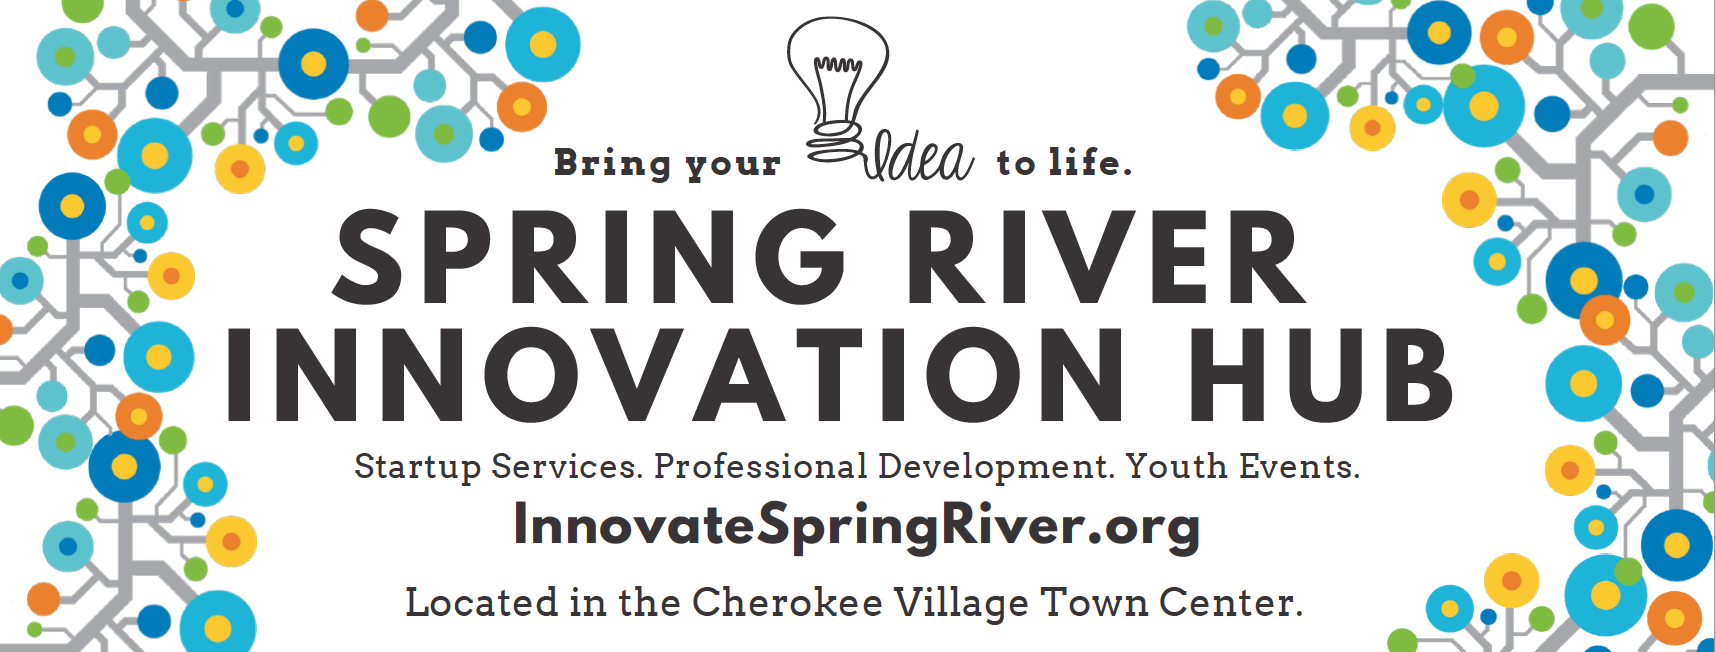 Spring River Innovation Hub logo